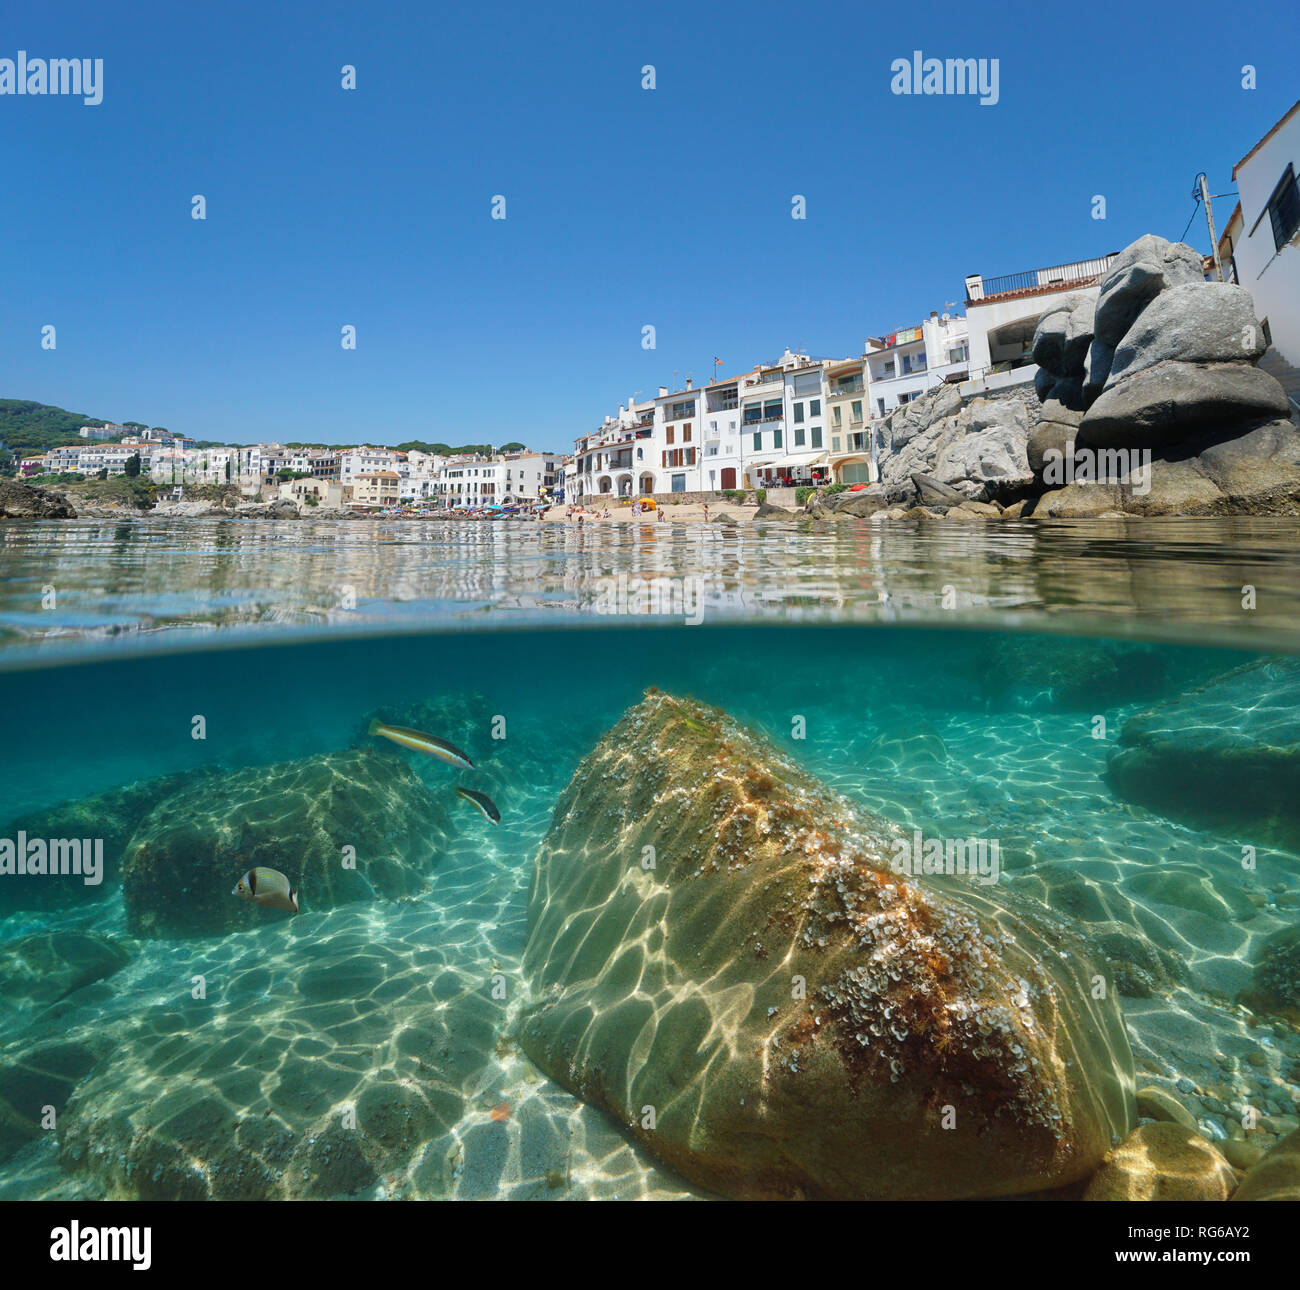 Spanien Calella de Palafrugell Dorf am Meer mit Felsen, Unterwasser, Mittelmeer, Costa Brava, Katalonien, geteilte Ansicht Hälfte über und unter Wasser Stockfoto